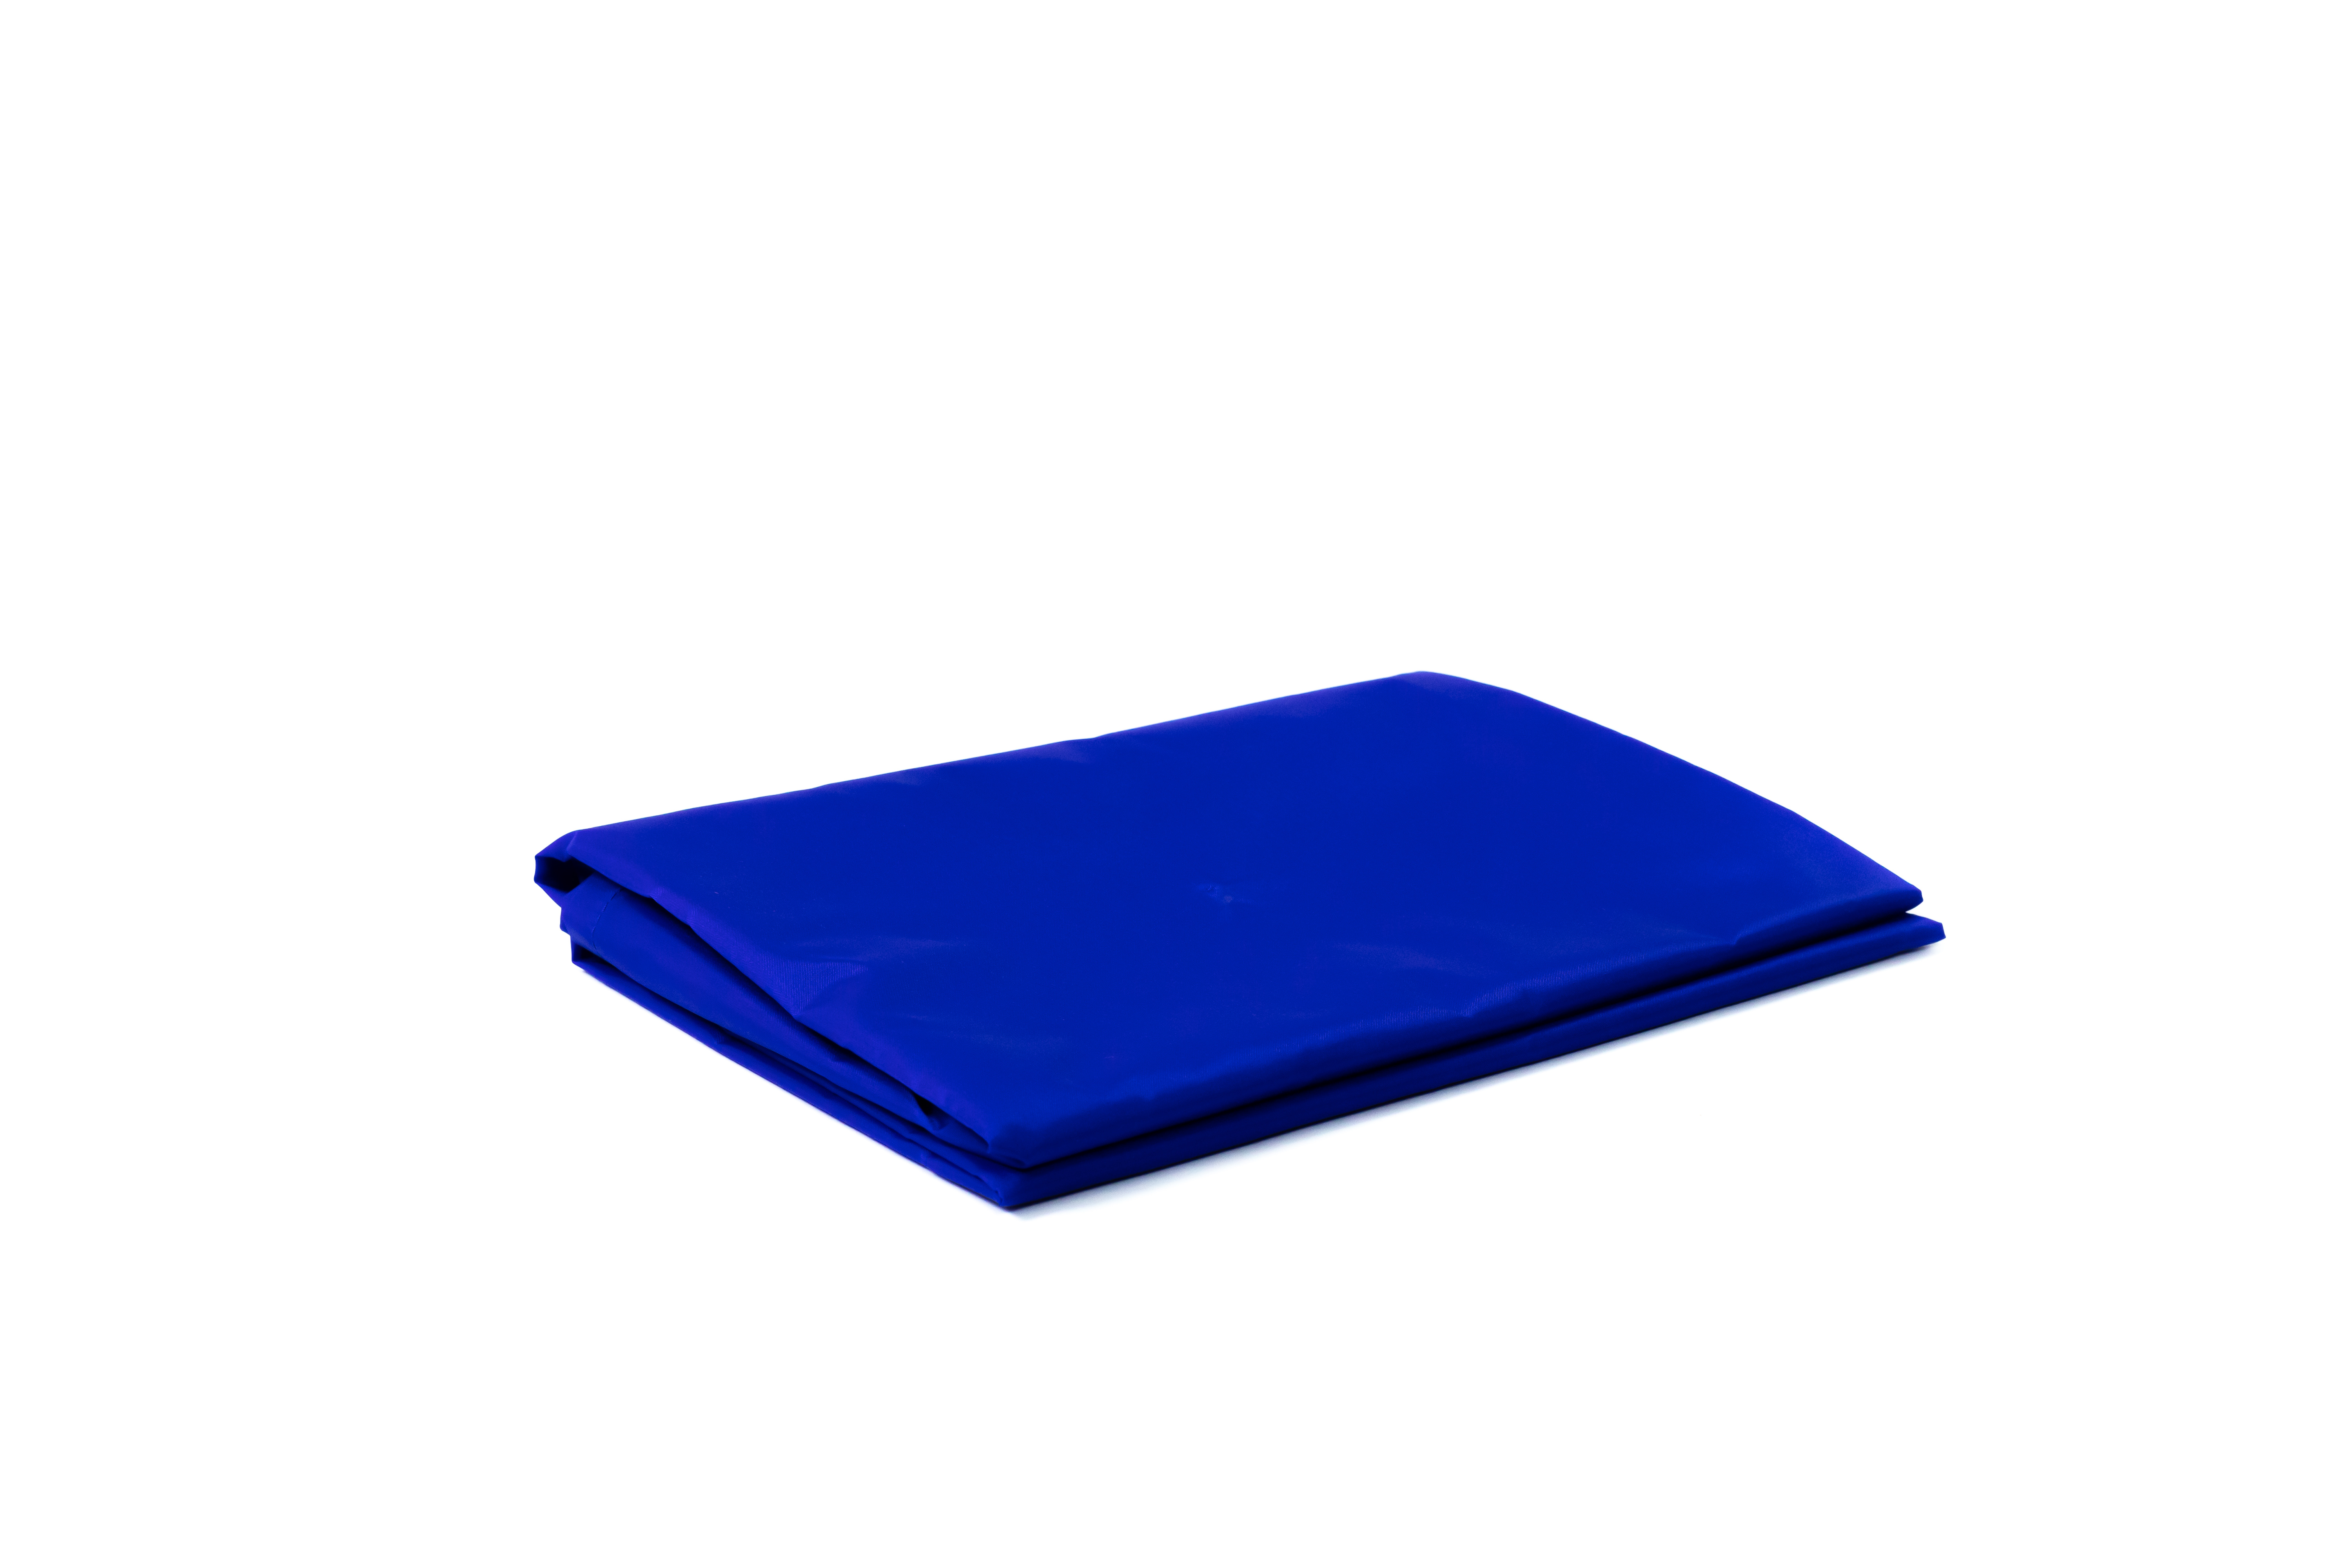 Glijzeil - met ophanglint - open aan lange zijde - blauw - 120 x 75 cm - 1 st